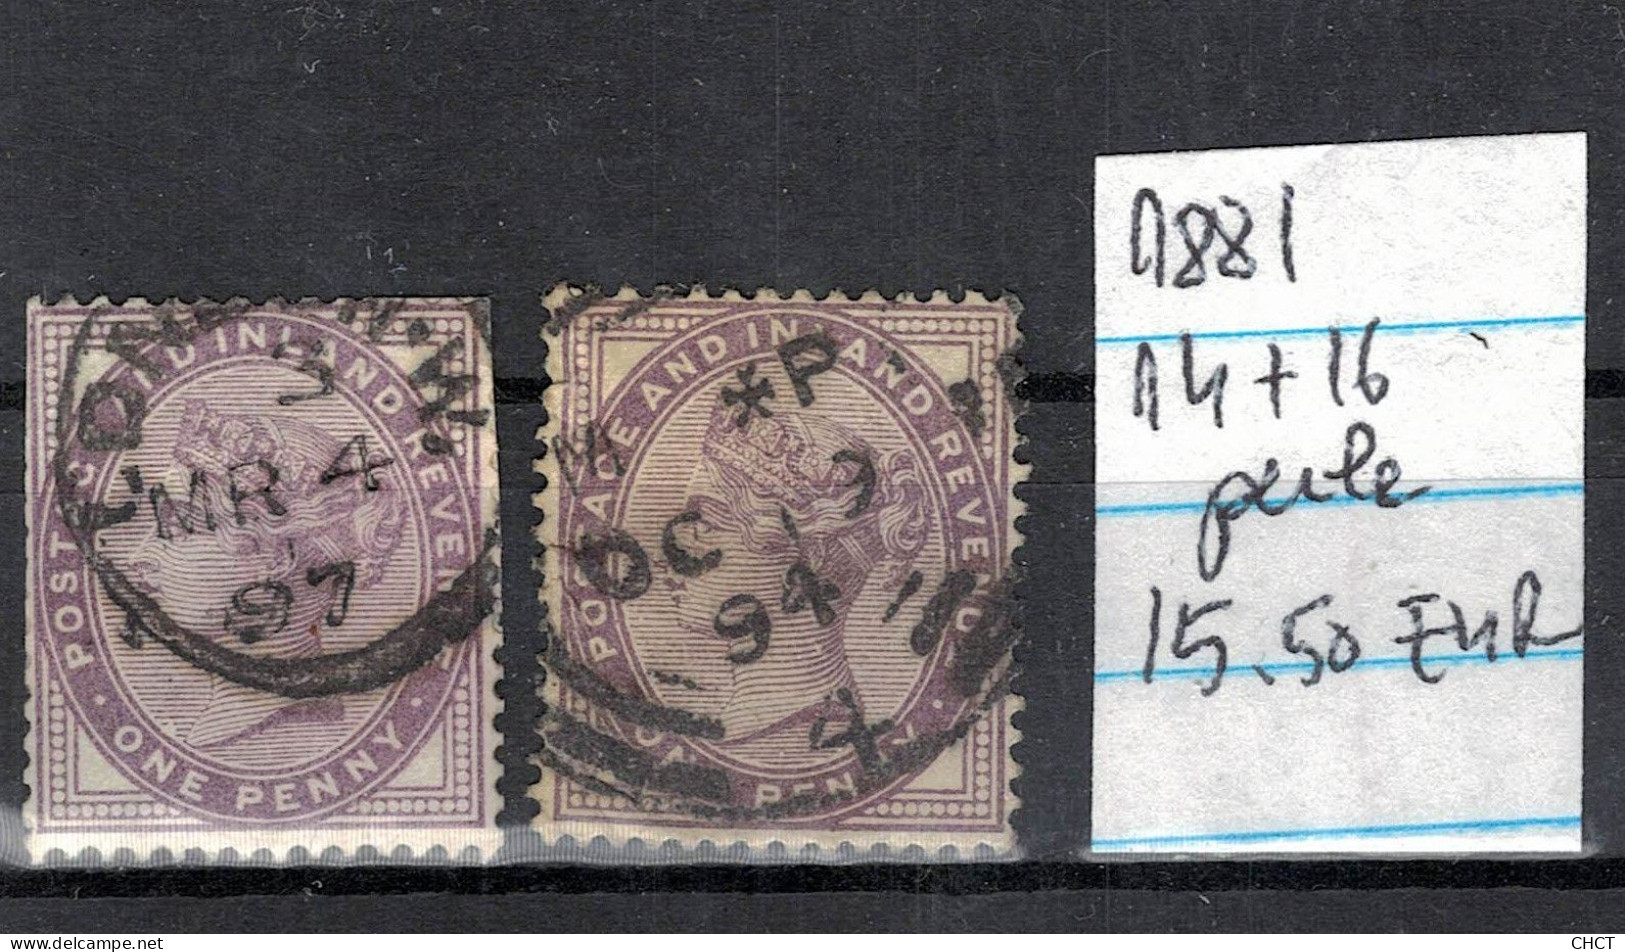 CHCT62 -  Queen Victoria, 14 & 16 Pearls, Used Stamps, 1881, Great Britain - Gebruikt